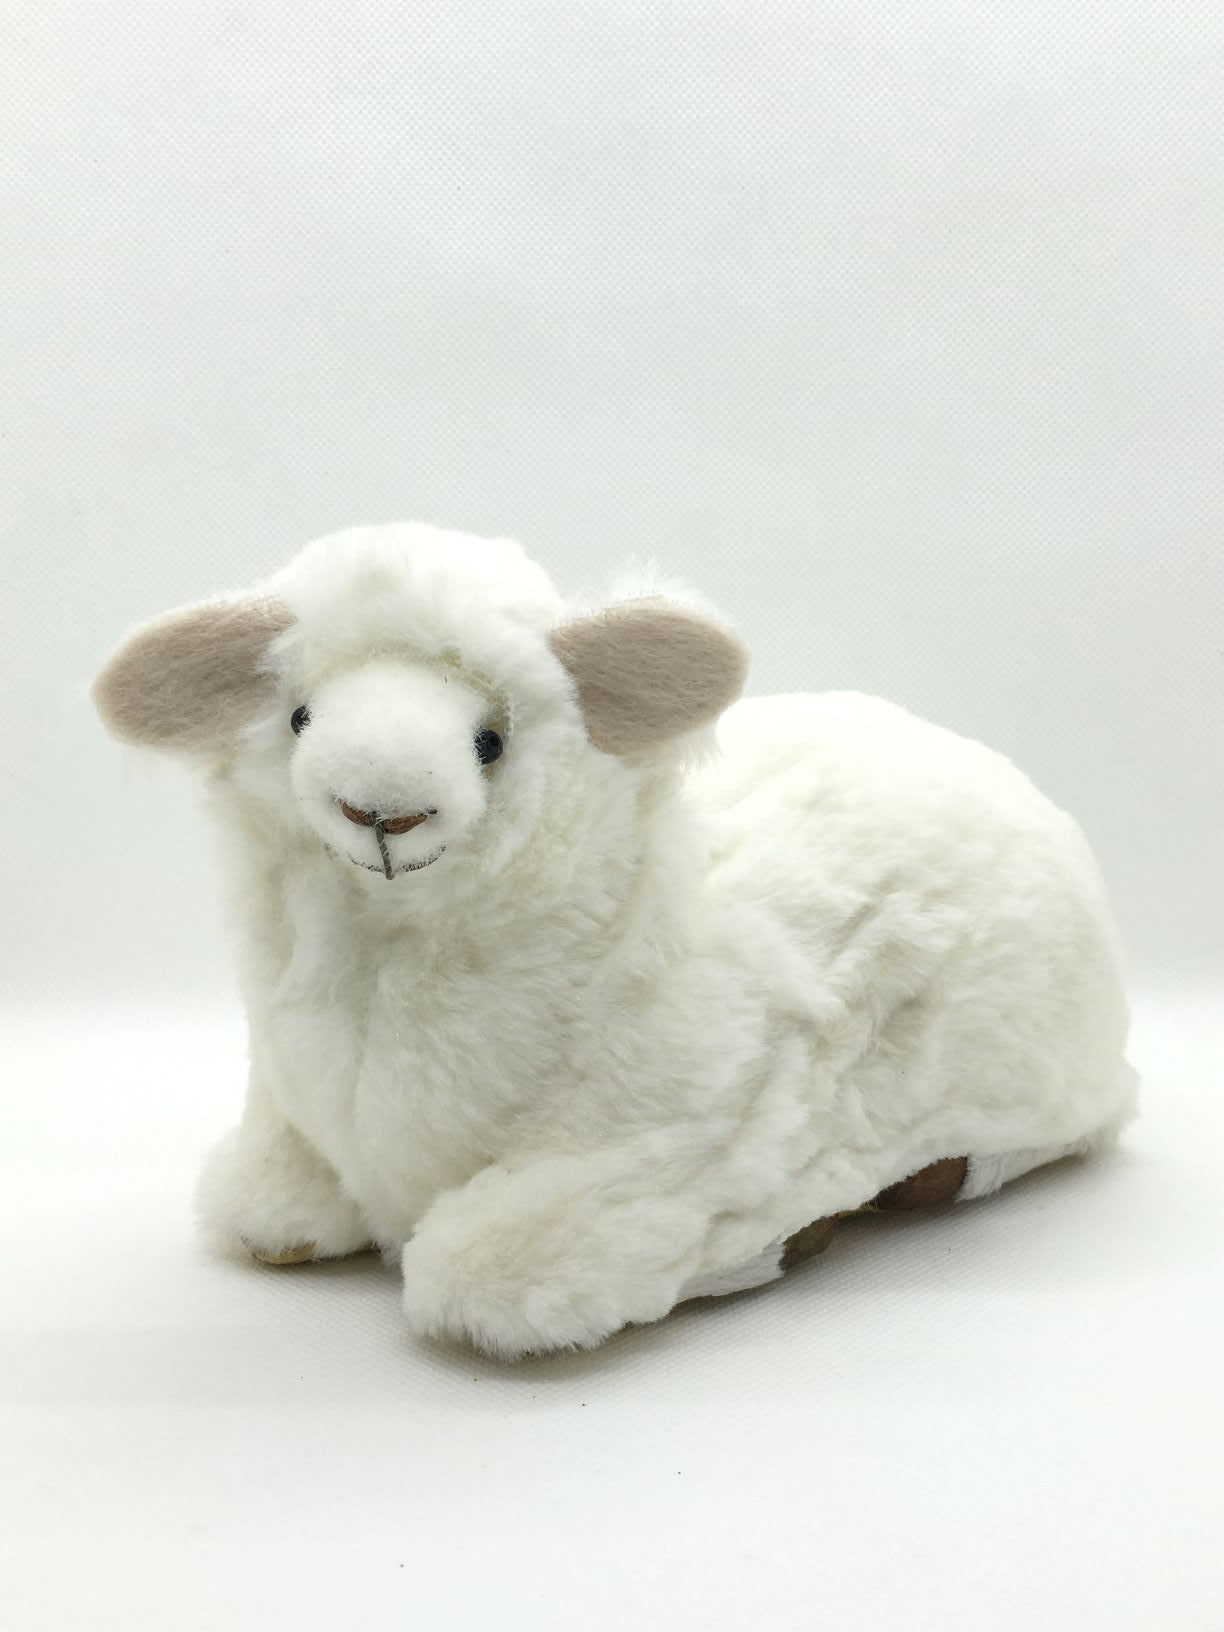 Pecorella seduta di peluche. Dimensioni: cm 18 x 12 h Articolo decorativo, non è un giocattolo.